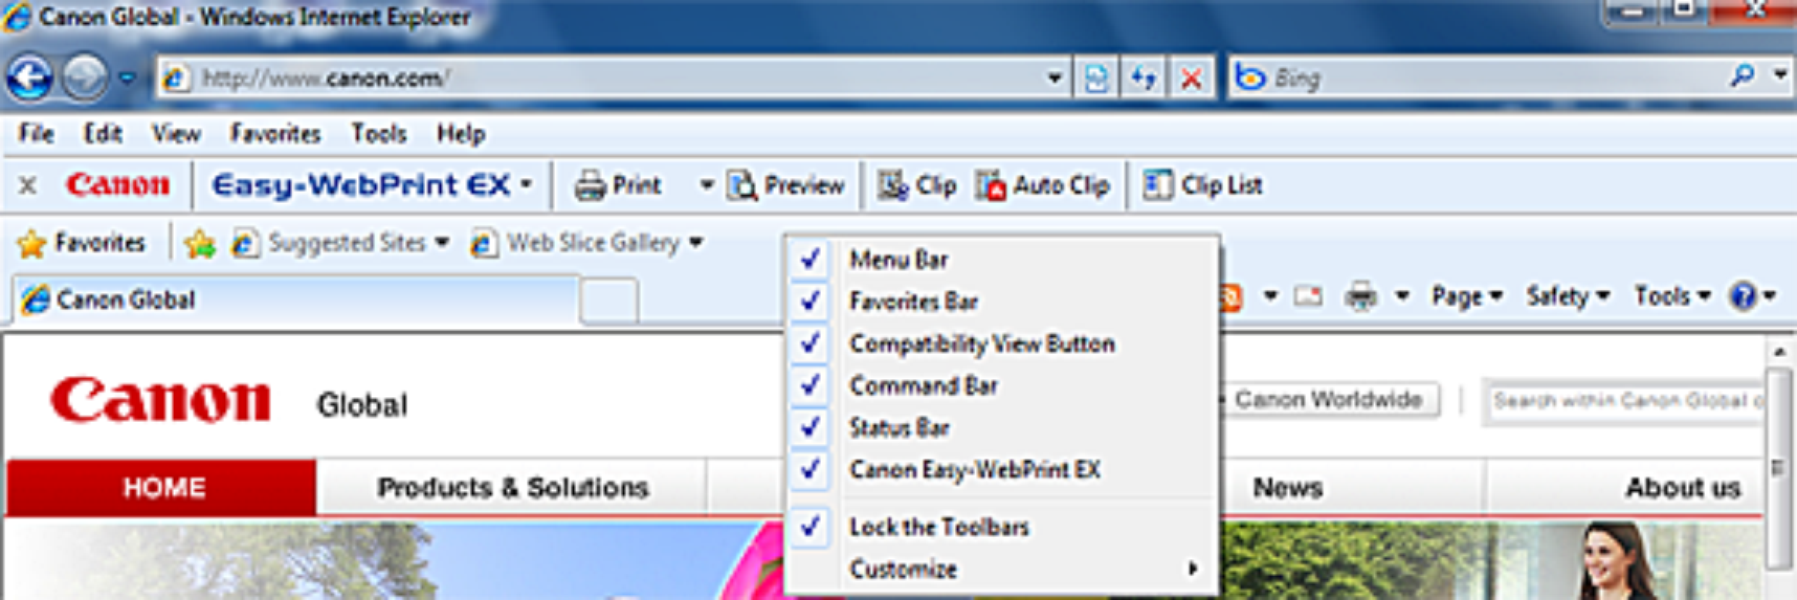 easy webprint ex for windows 7